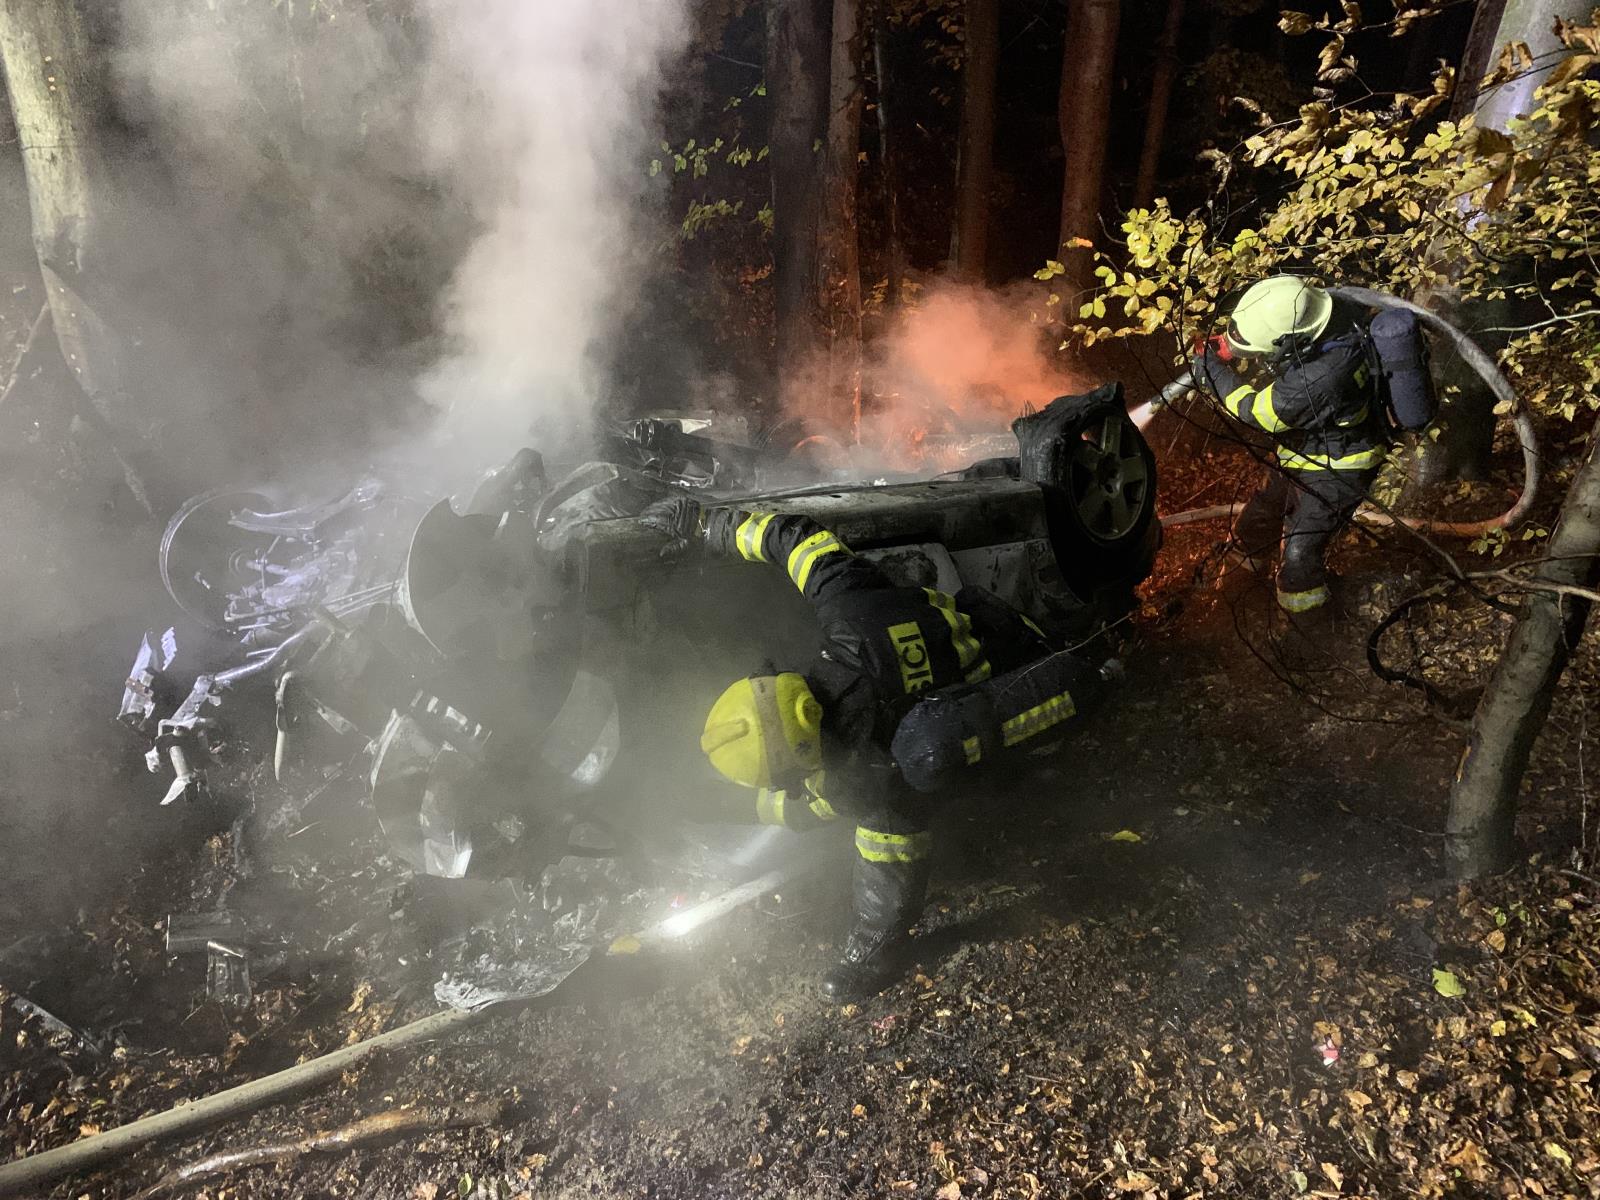 ZLK_DN s tragickými následky_2 hasiči hasí hořící osobní automobil, který spadl ze srázu do lesa.jpg